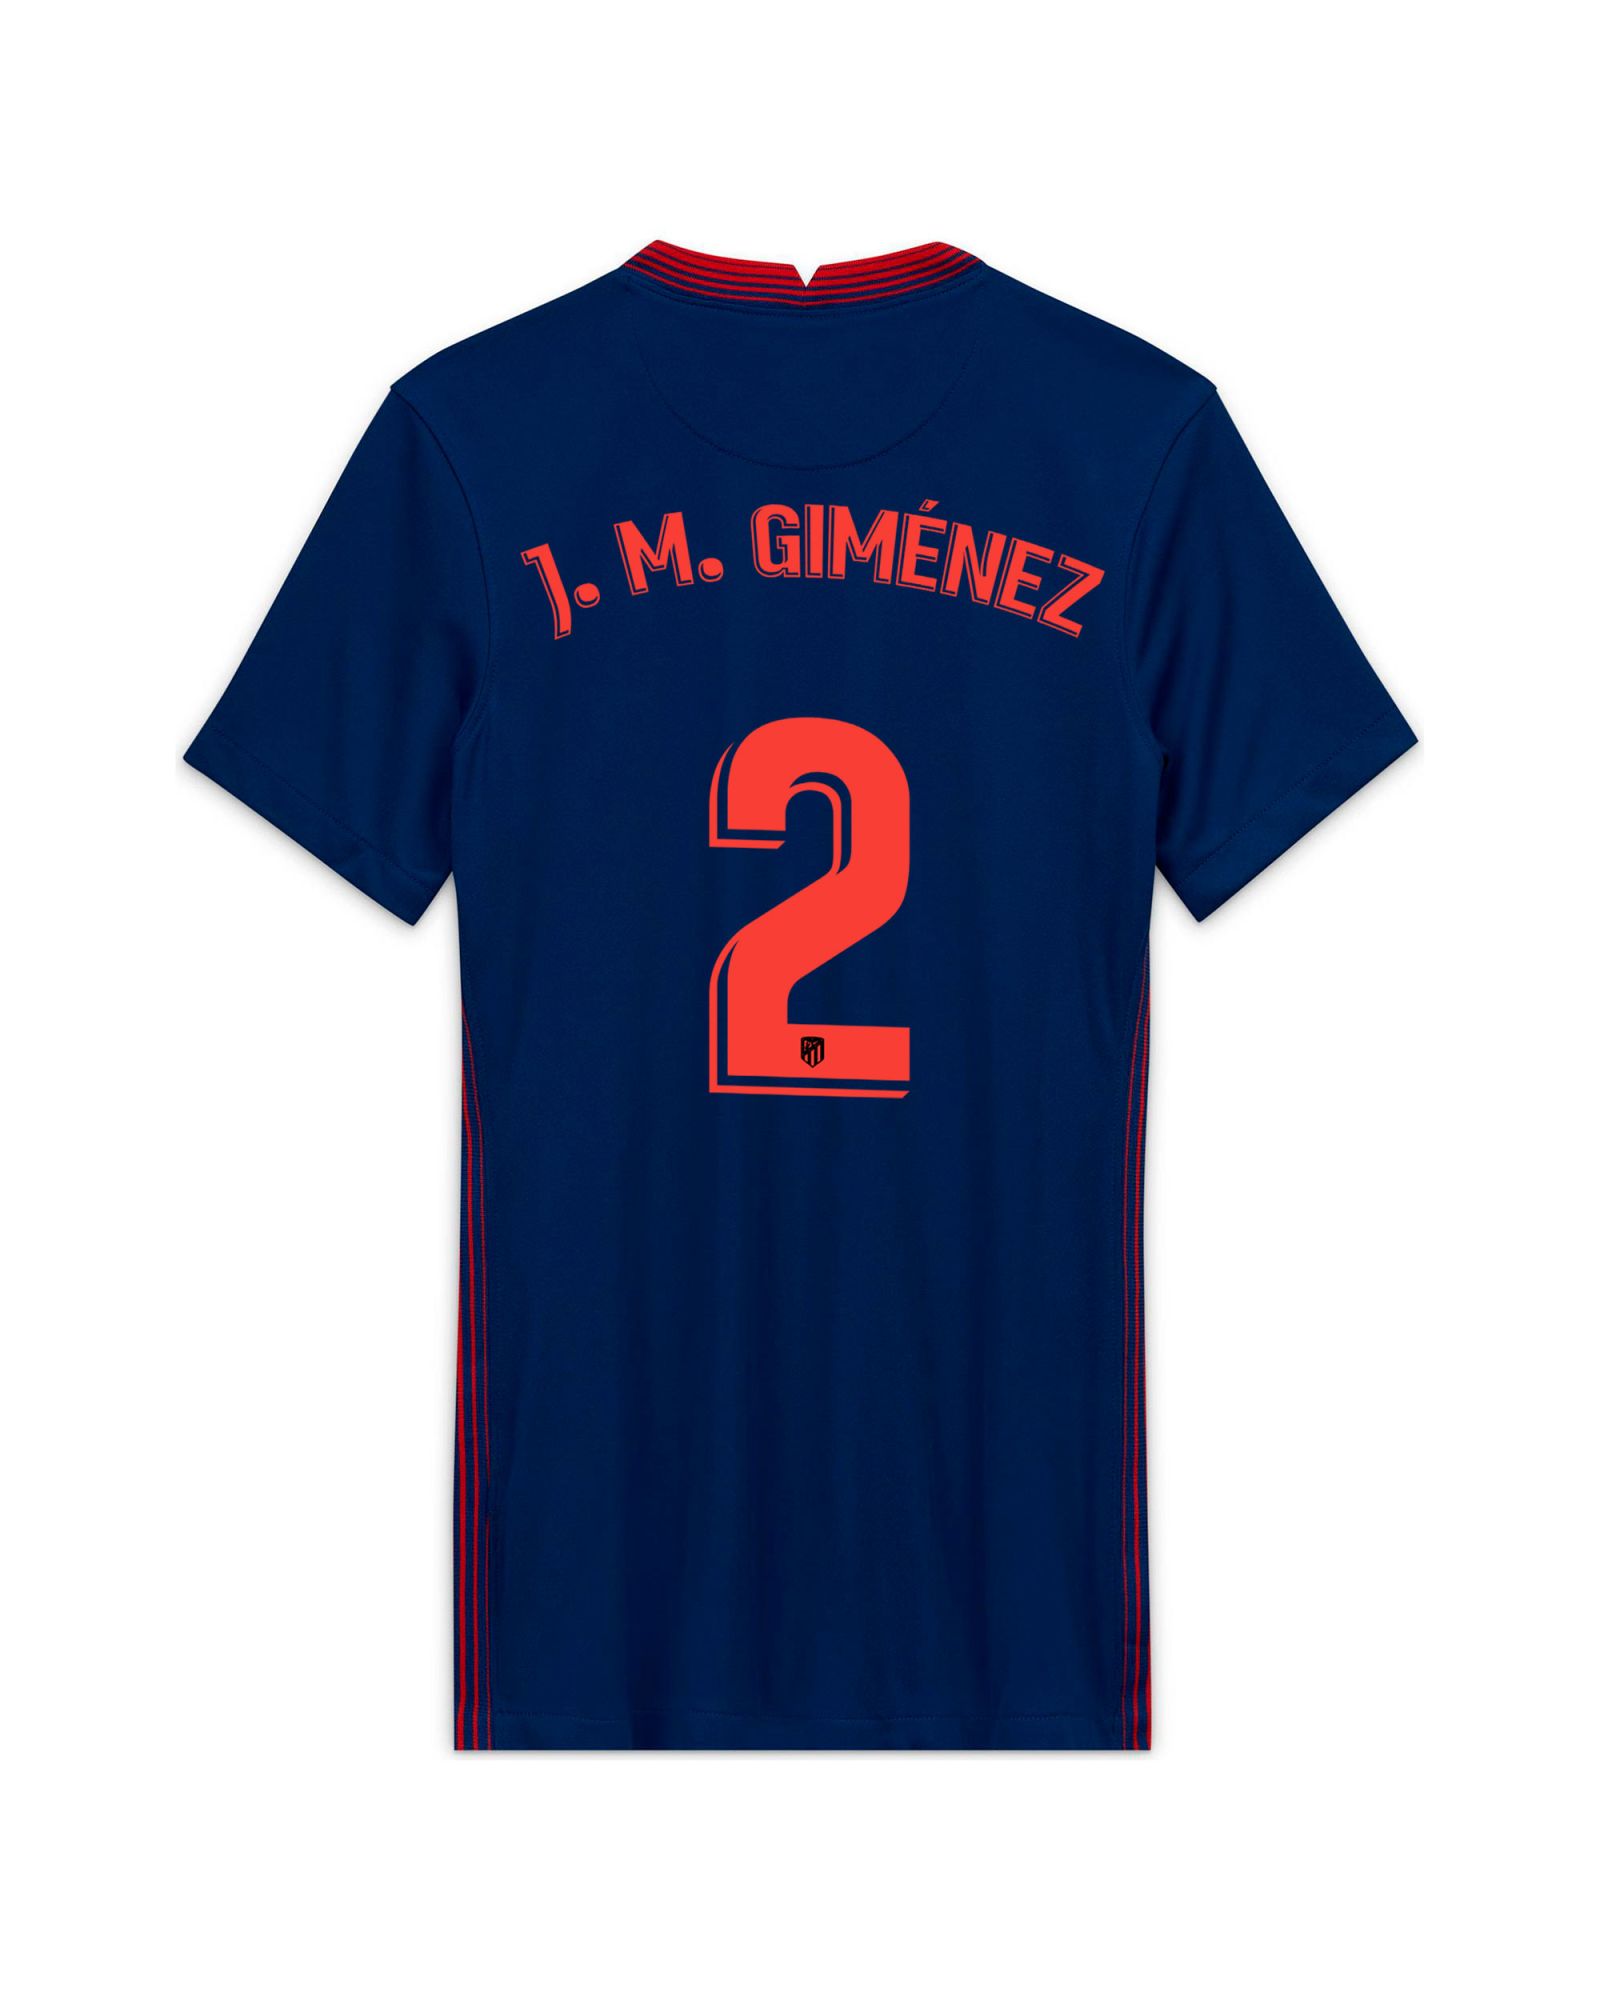 Camiseta 2ª Atlético de Madrid 2020/2021 Mujer Marino J.M Giménez - Fútbol Factory